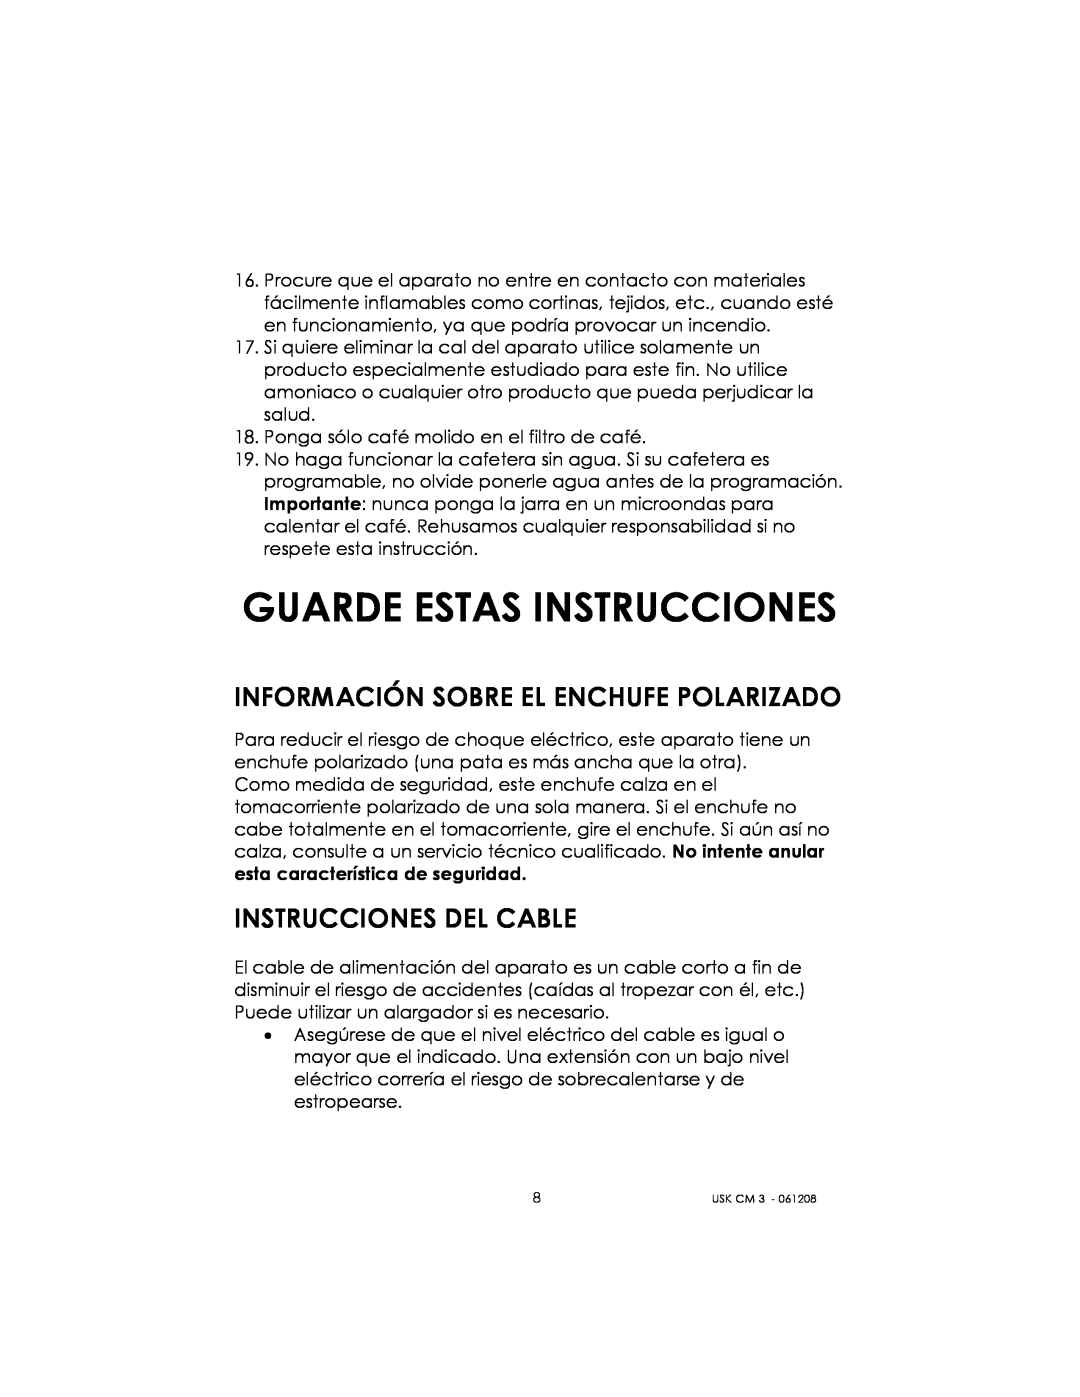 Kalorik USK CM 3 manual Guarde Estas Instrucciones, Información Sobre El Enchufe Polarizado, Instrucciones Del Cable 